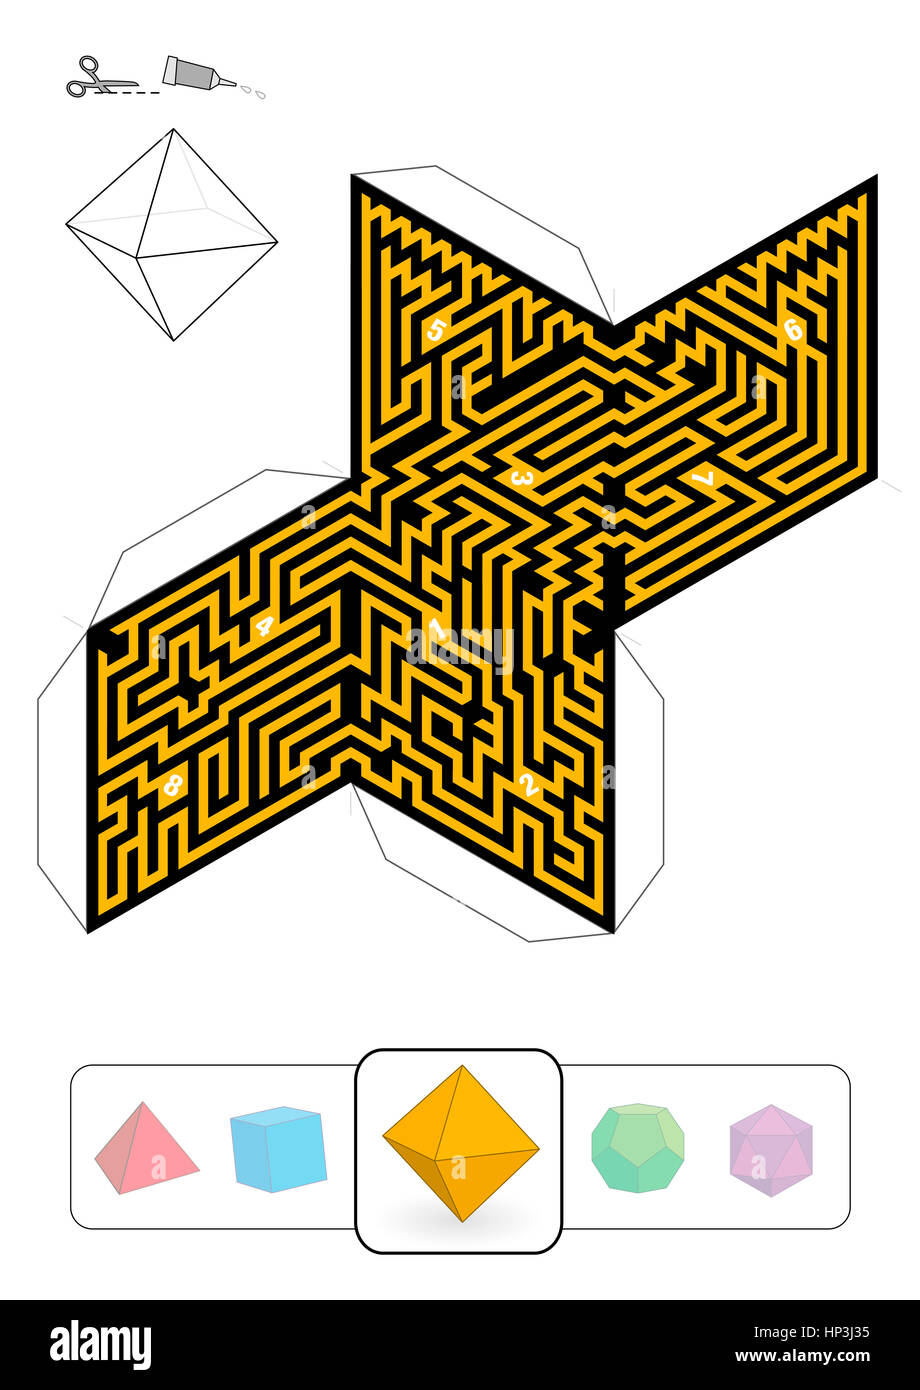 Labyrinthe - modèle d'octaèdre un des cinq solides platoniciens labyrinthes - Imprimer sur du papier épais, découpez-le, faire un modèle 3D Banque D'Images